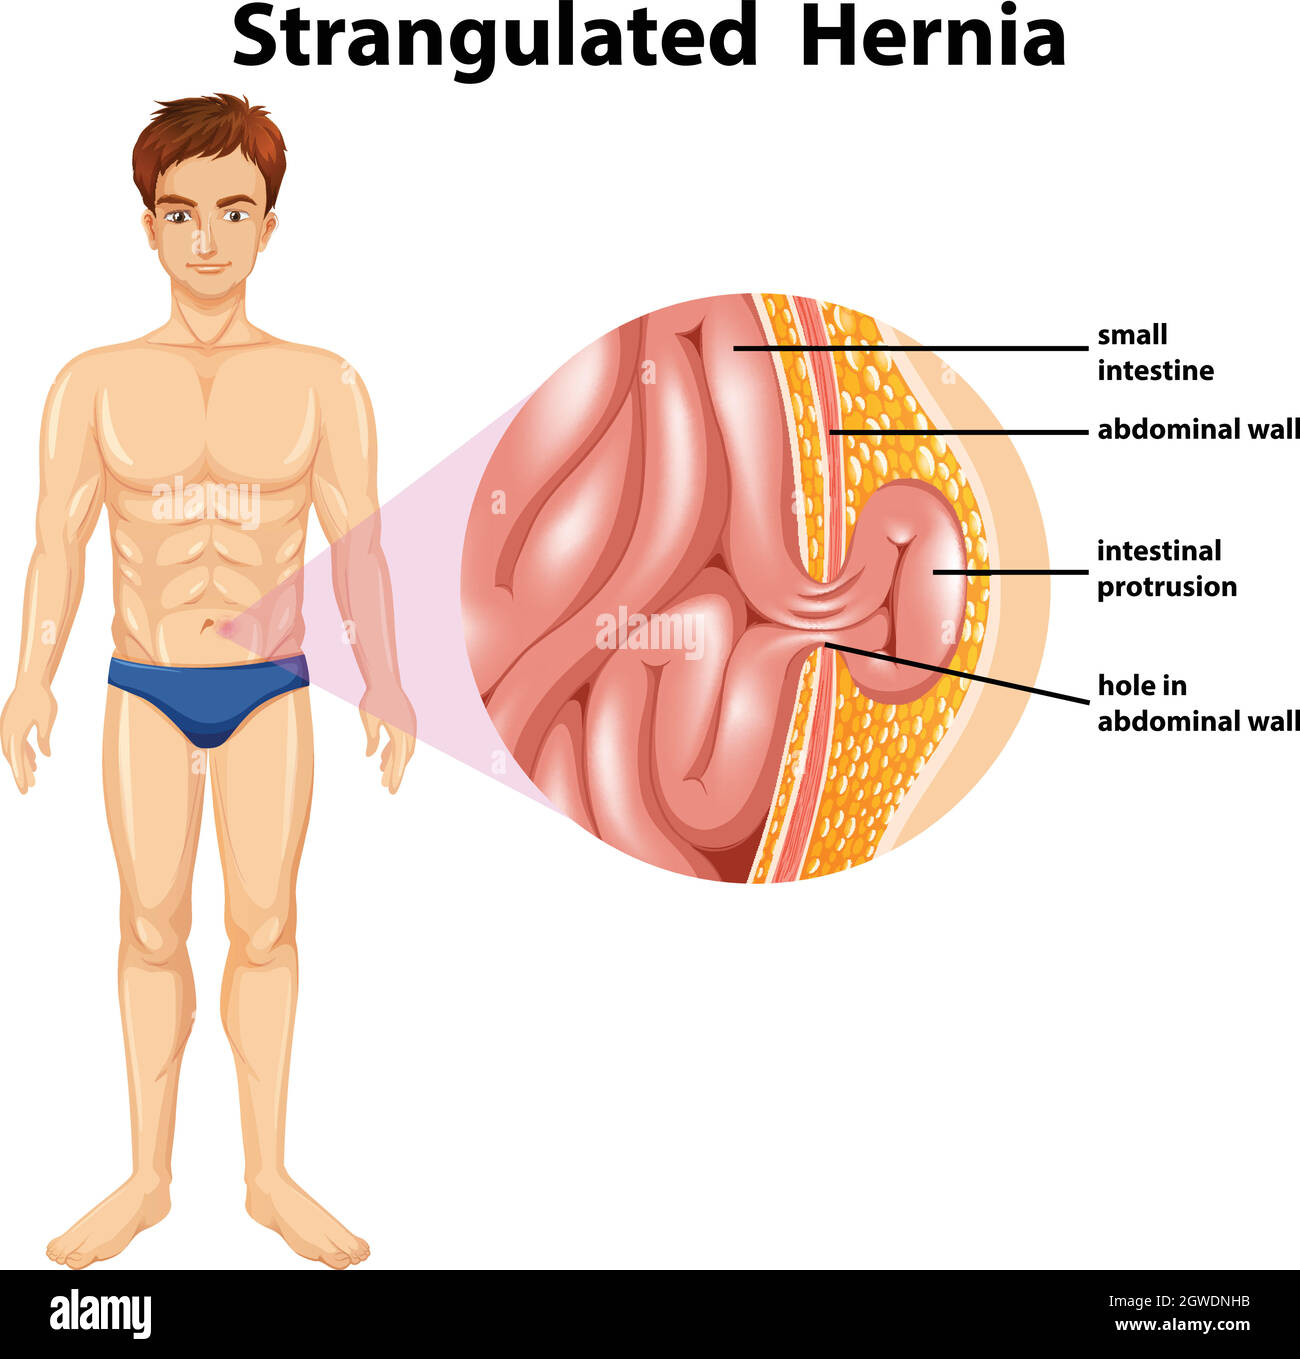 Anatomie humaine de la hernie étranglée Illustration de Vecteur